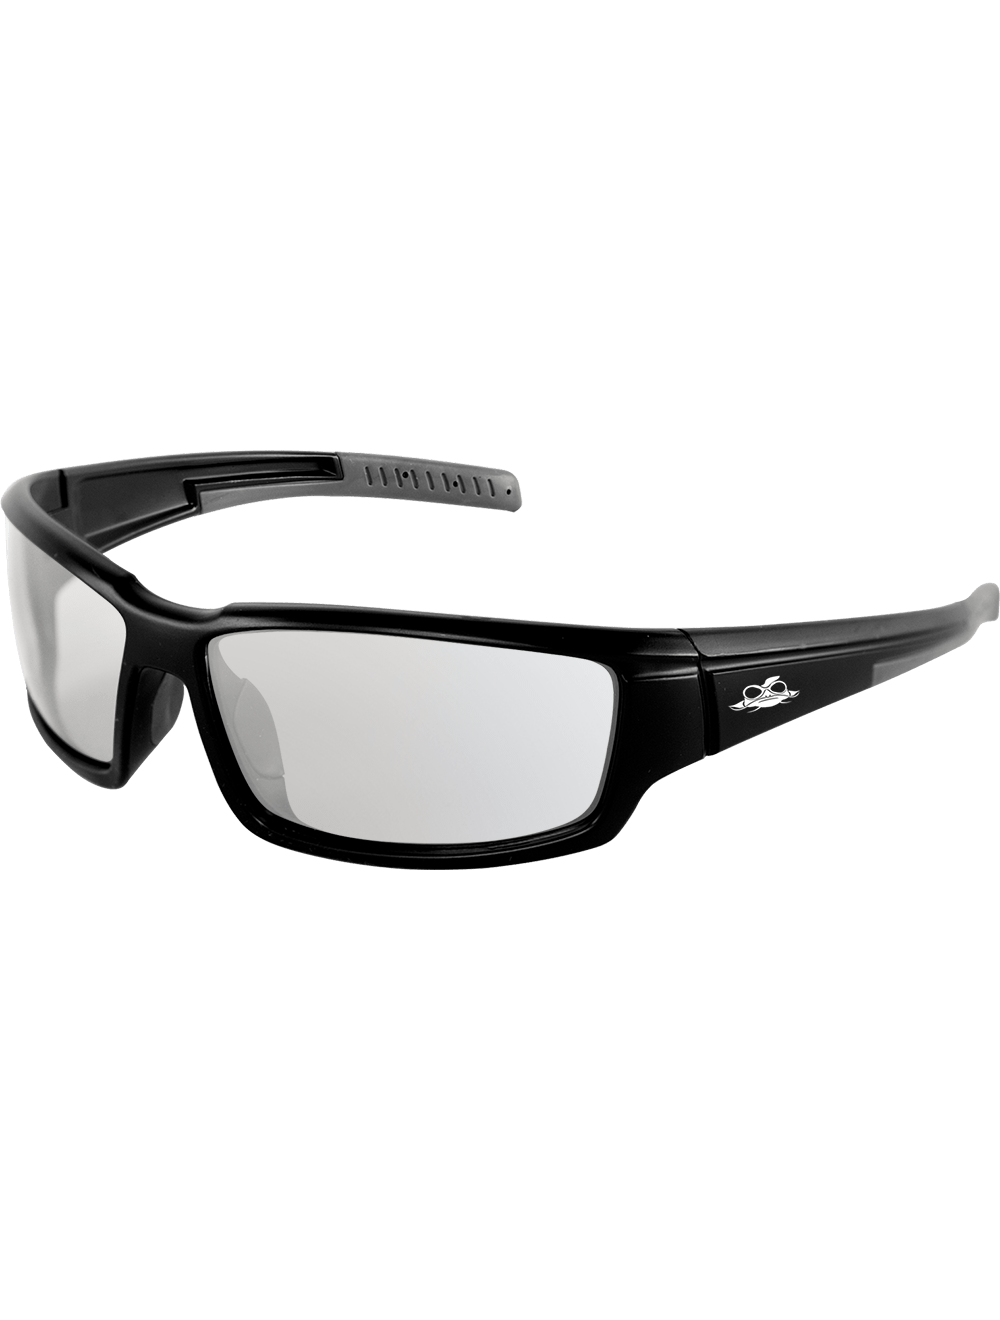 Maki® Indoor/Outdoor Anti-Fog Lens, Matte Black Frame Safety Glasses - BH1466AF